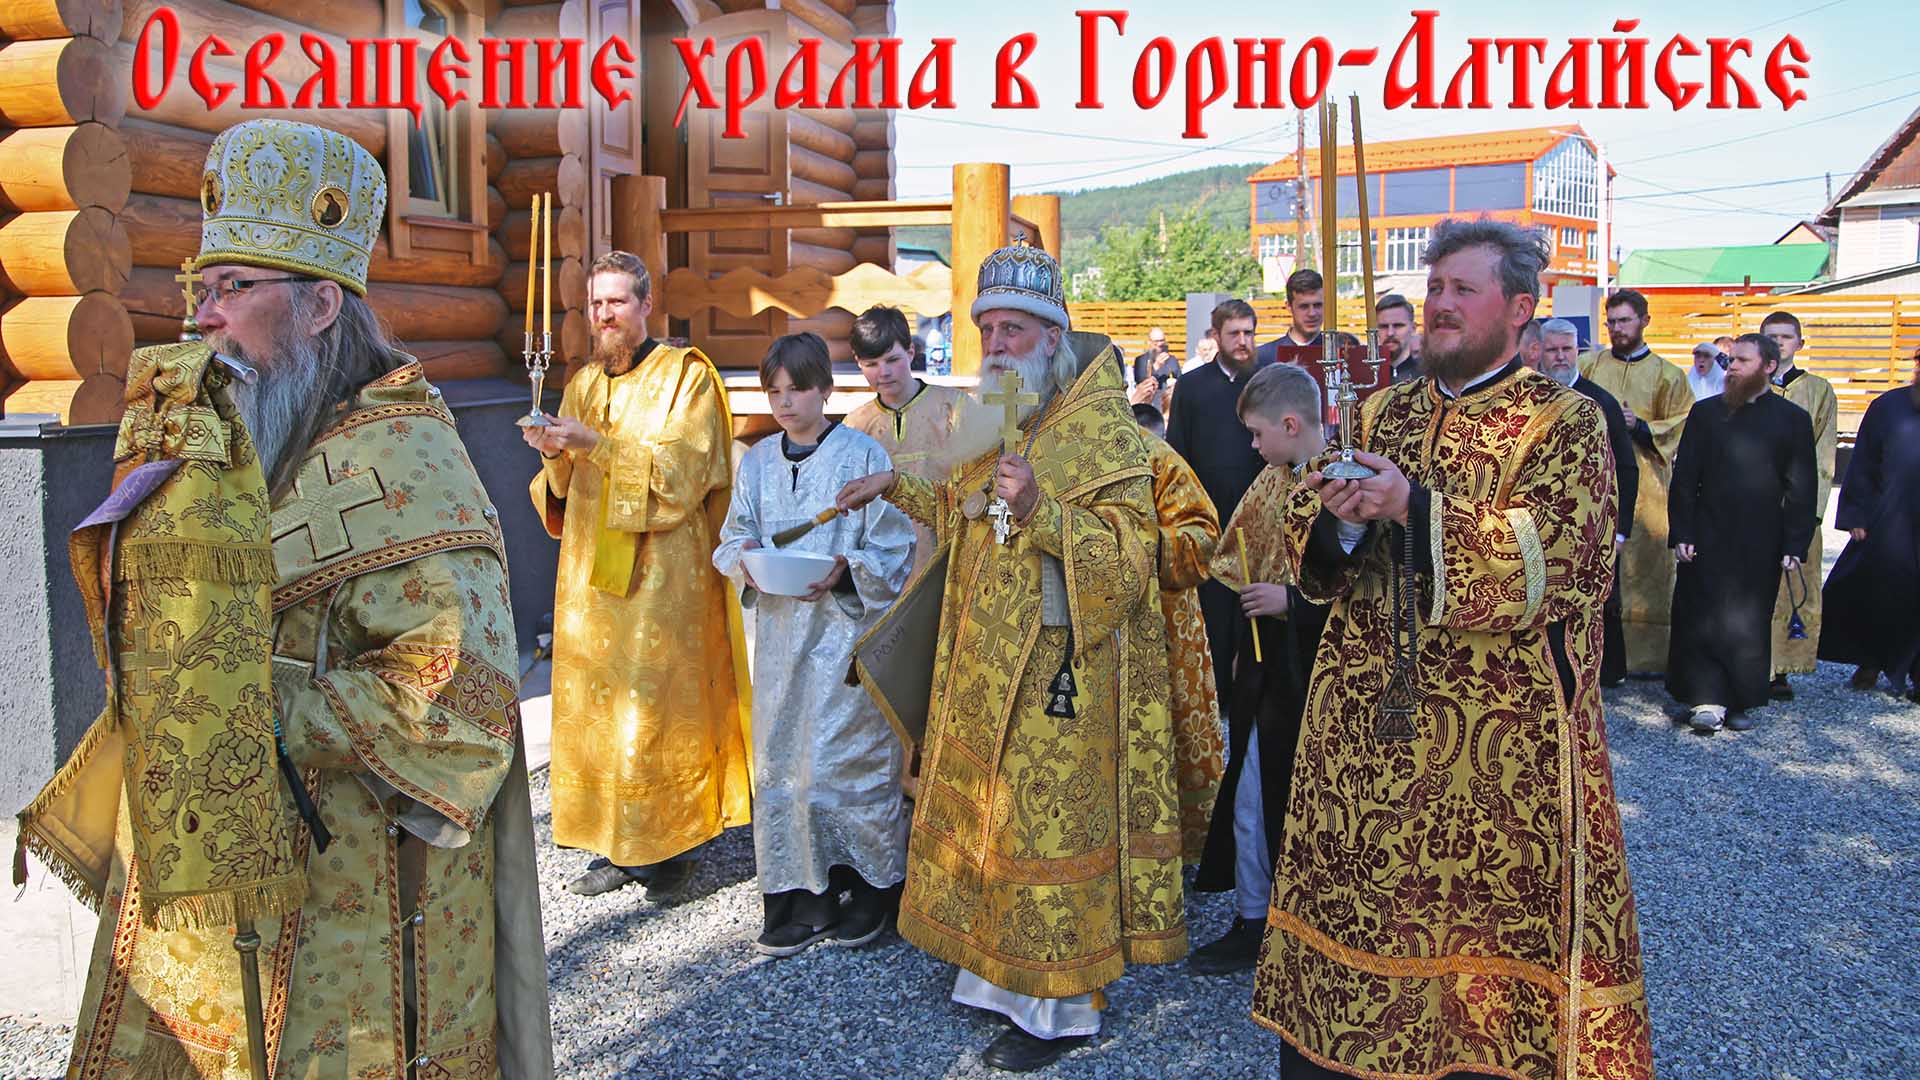 Освящение старообрядческого храма иконы Богородицы Одигитрии в г. Горно-Алтайске